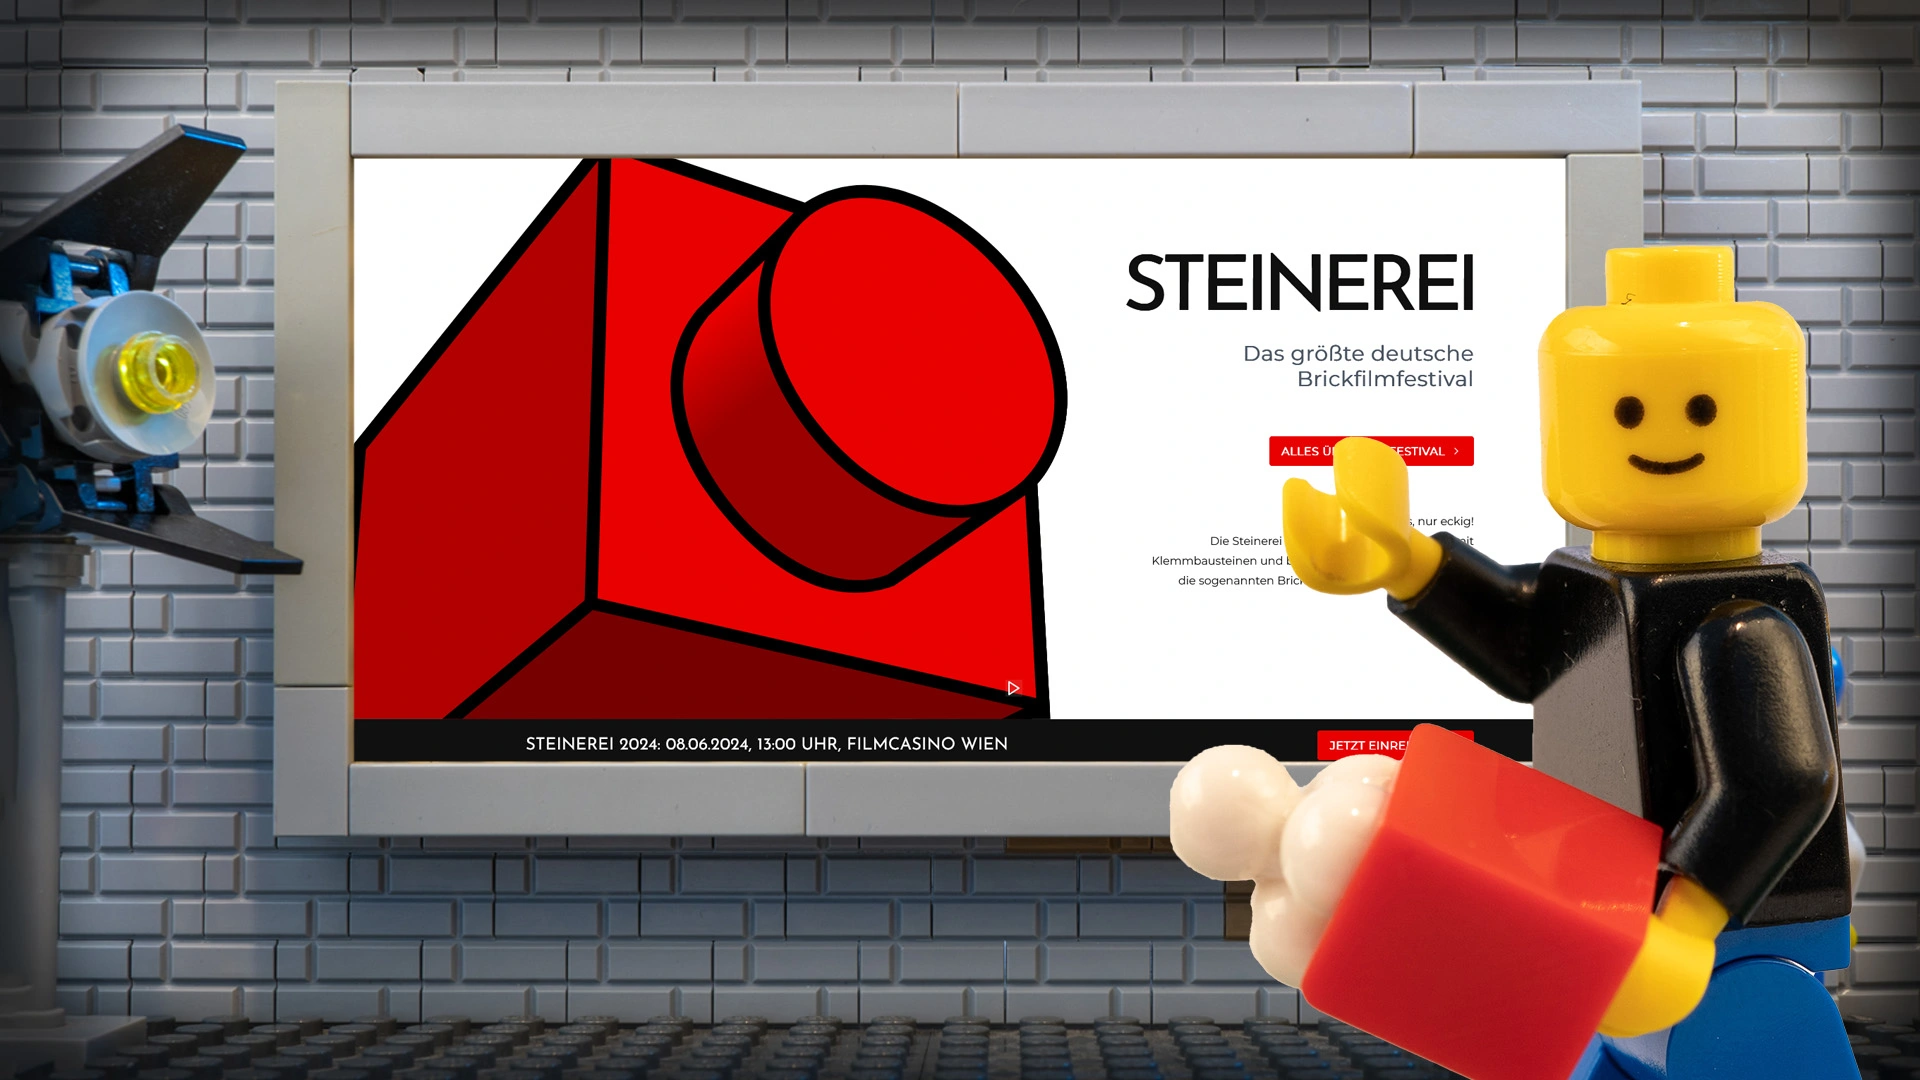 New Steinerei website now online!